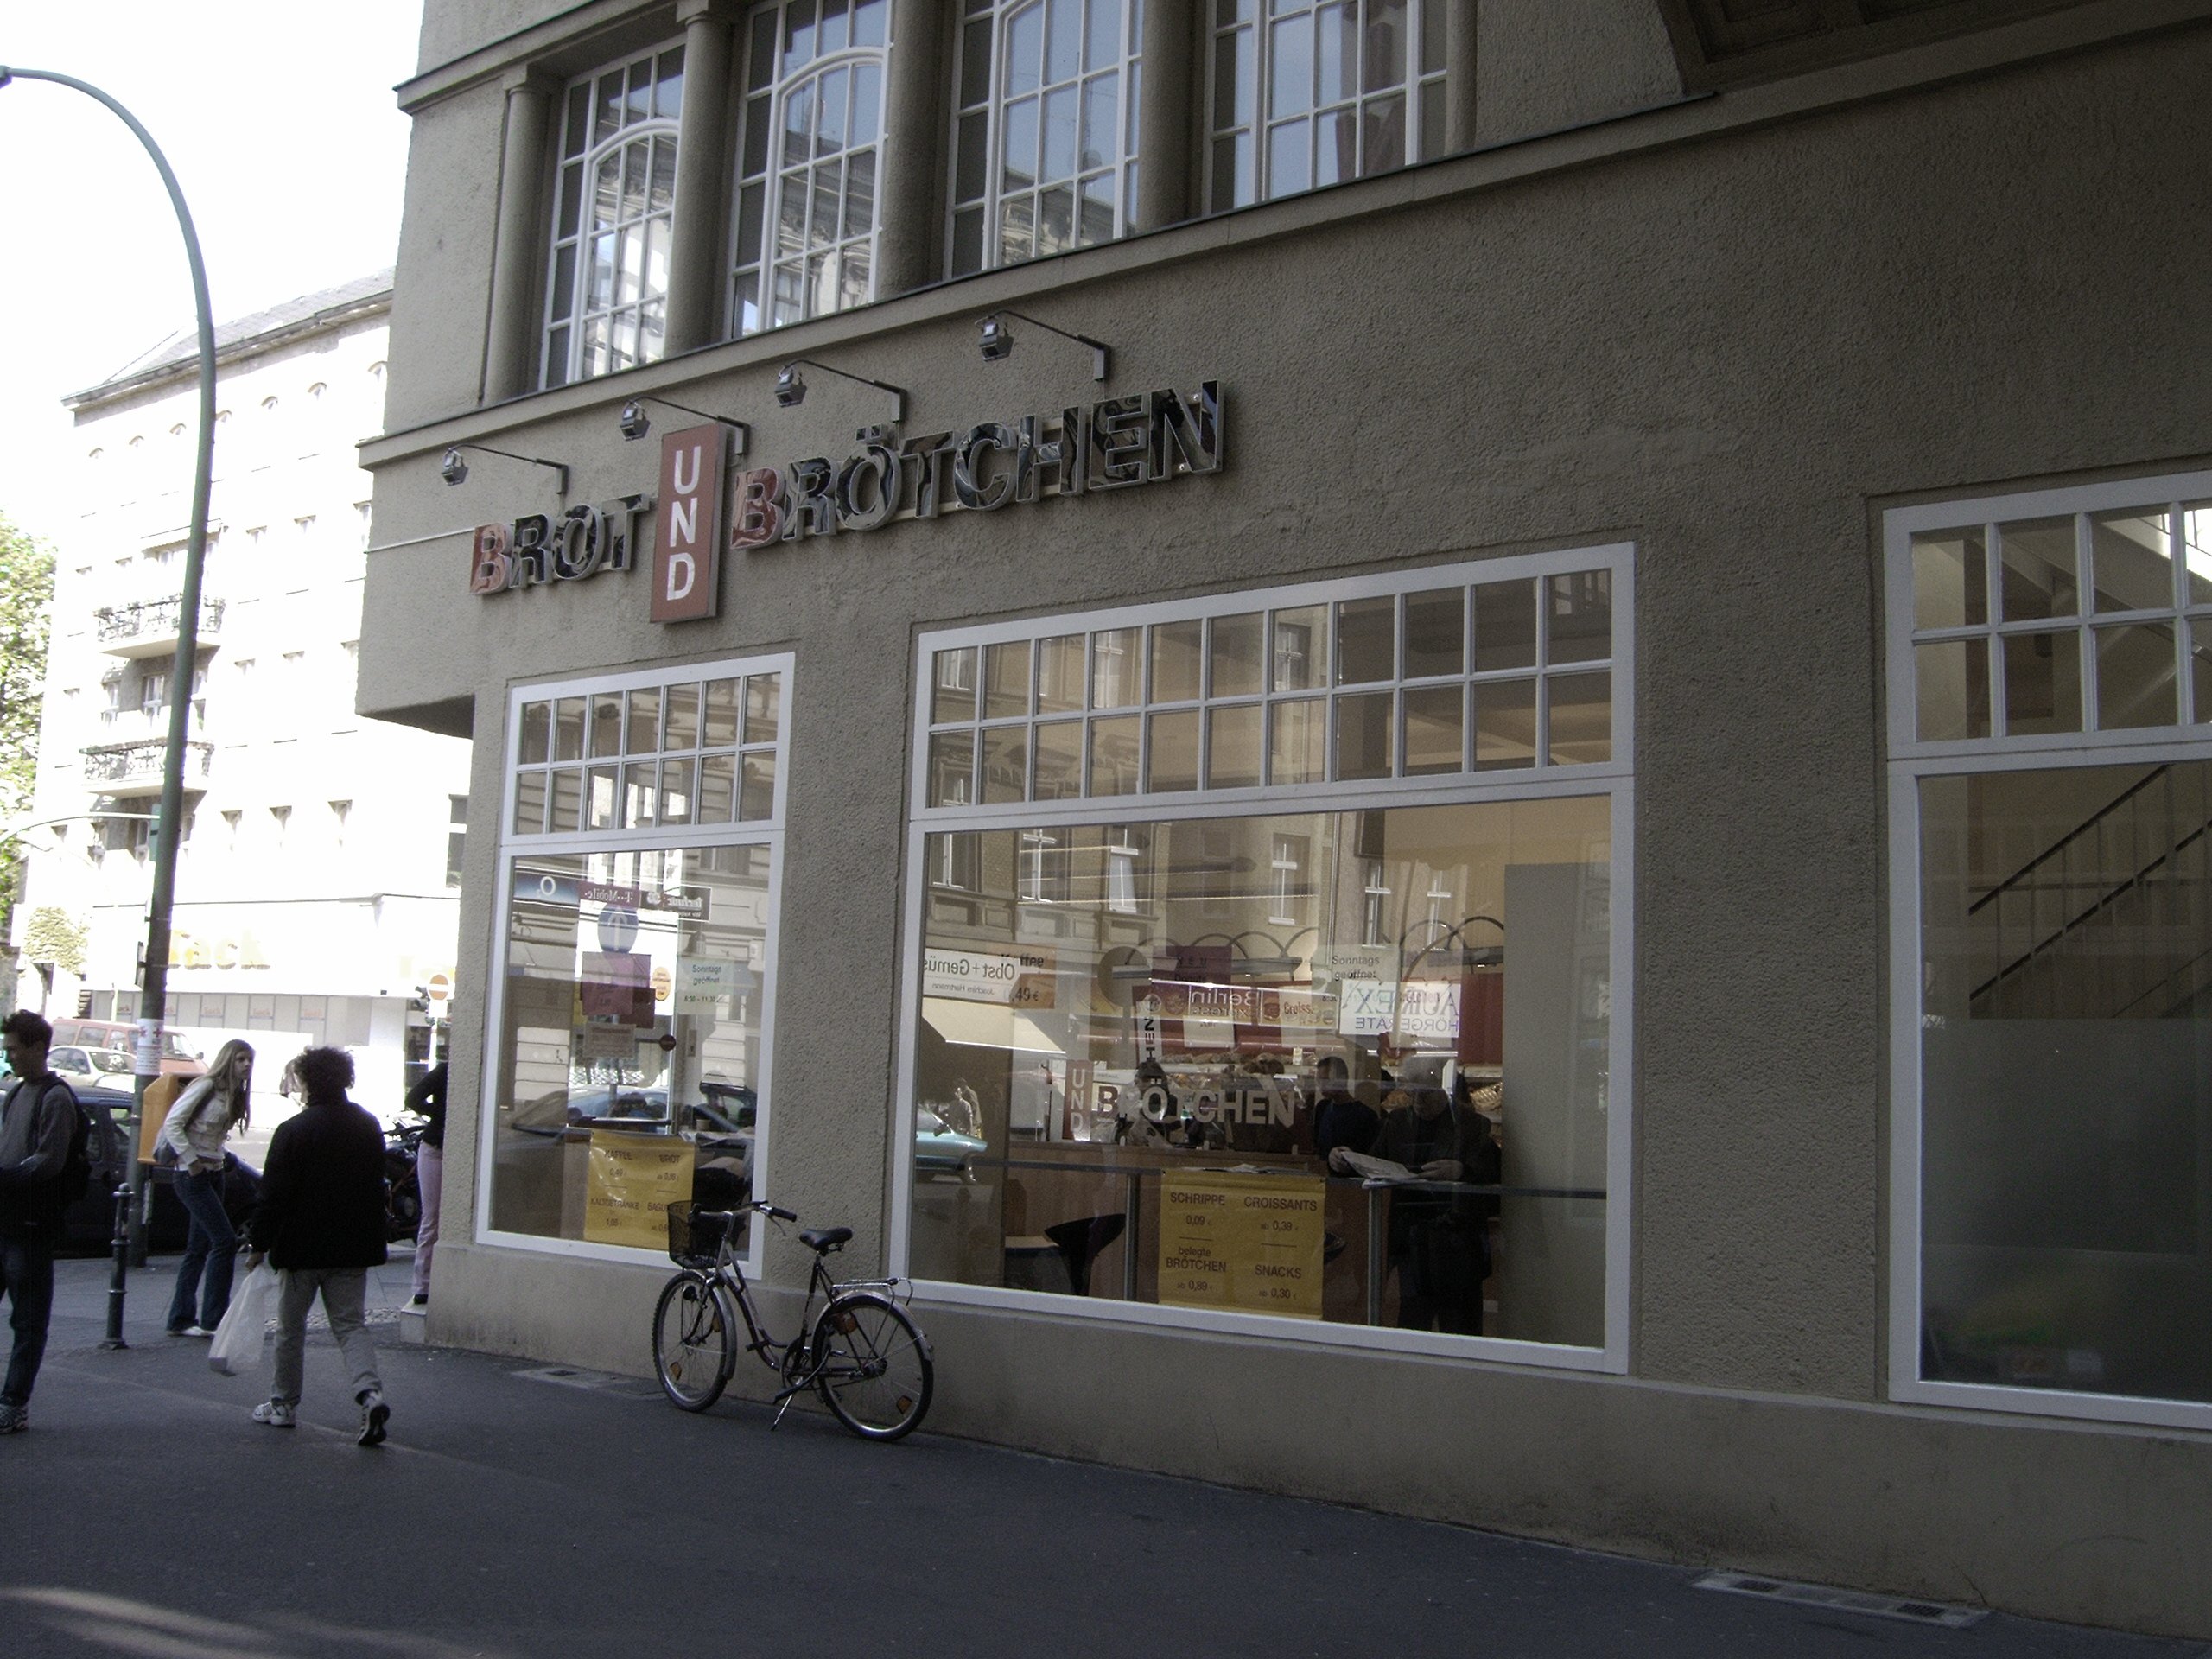 Farbphoto: Ein Imbiss mit Schrippen /Brötchen-Verkauf in der PASSAGE zwischen der Karl - Marx - Straße und der Richardstraße. Im Bezirk Neukölln in Berlin im Jahr 2005. Photo: Kim Hartley.